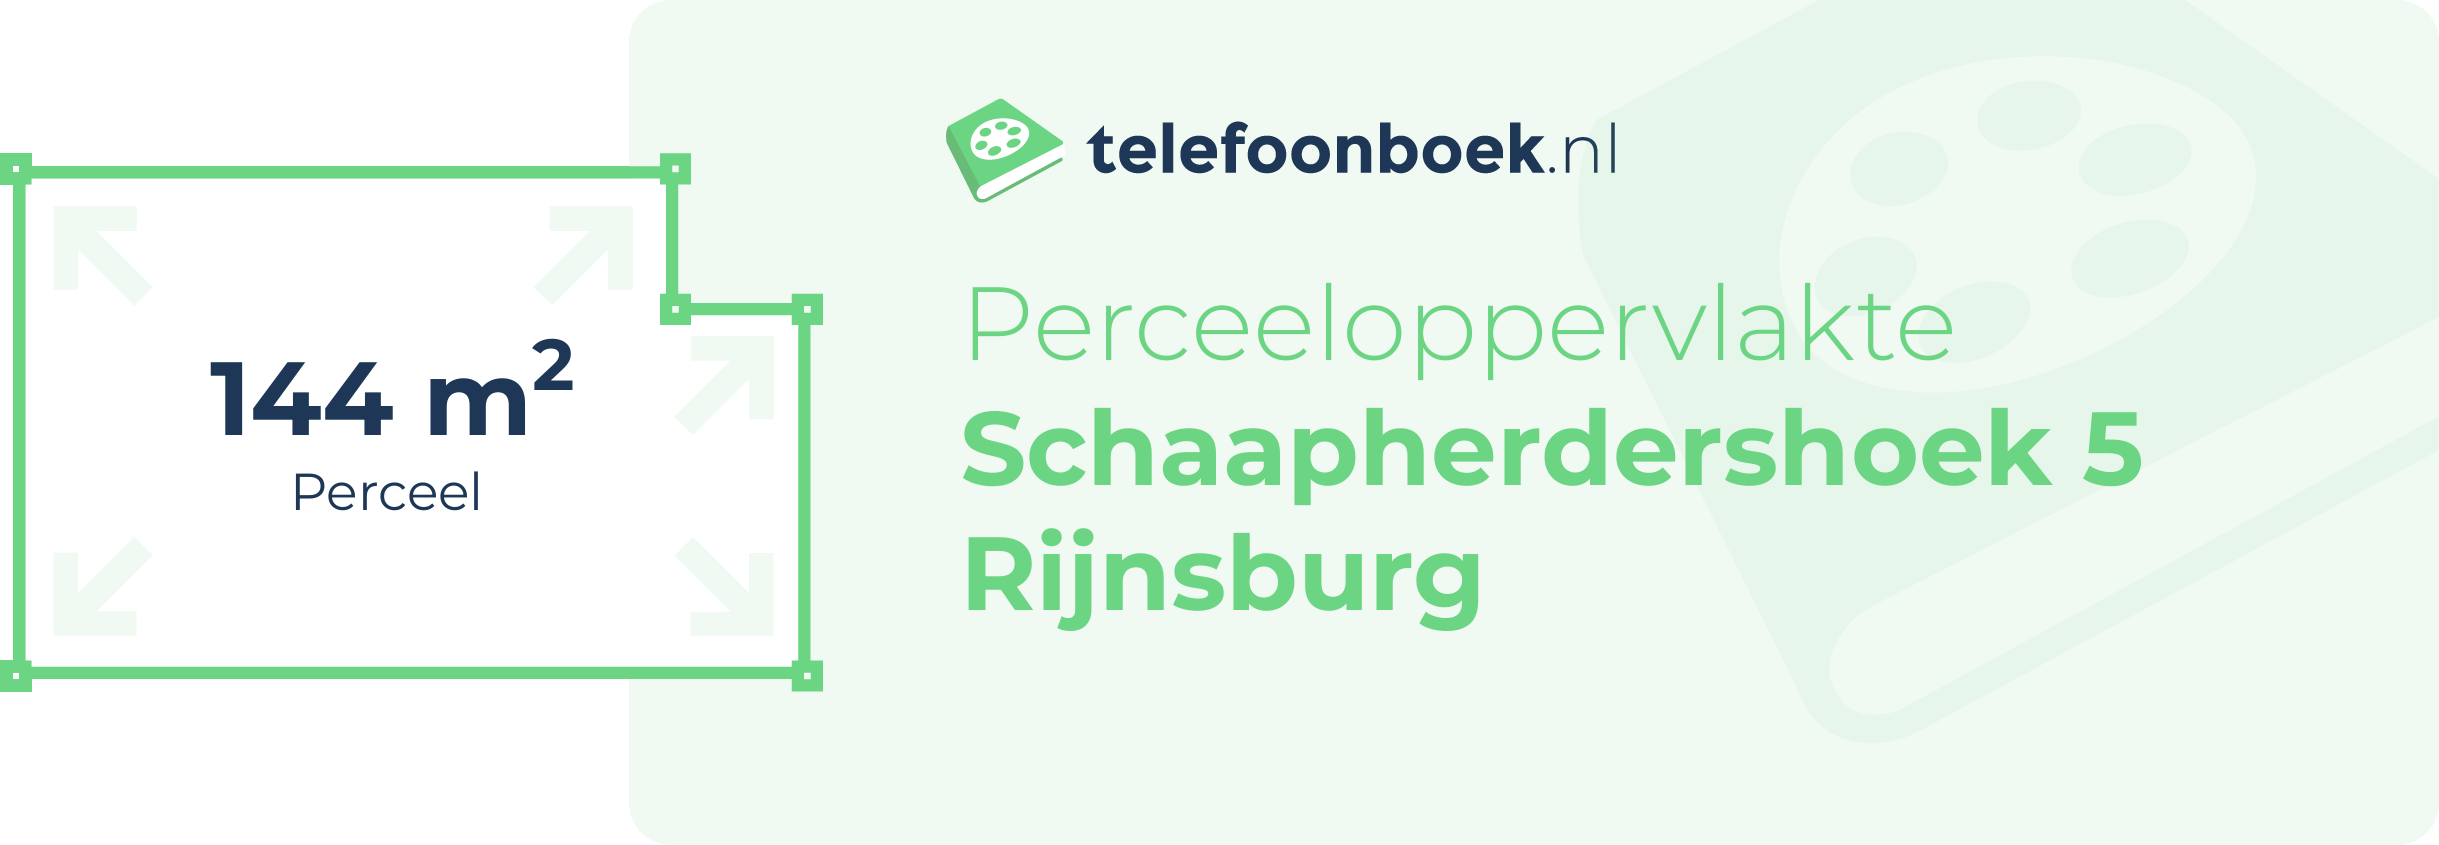 Perceeloppervlakte Schaapherdershoek 5 Rijnsburg